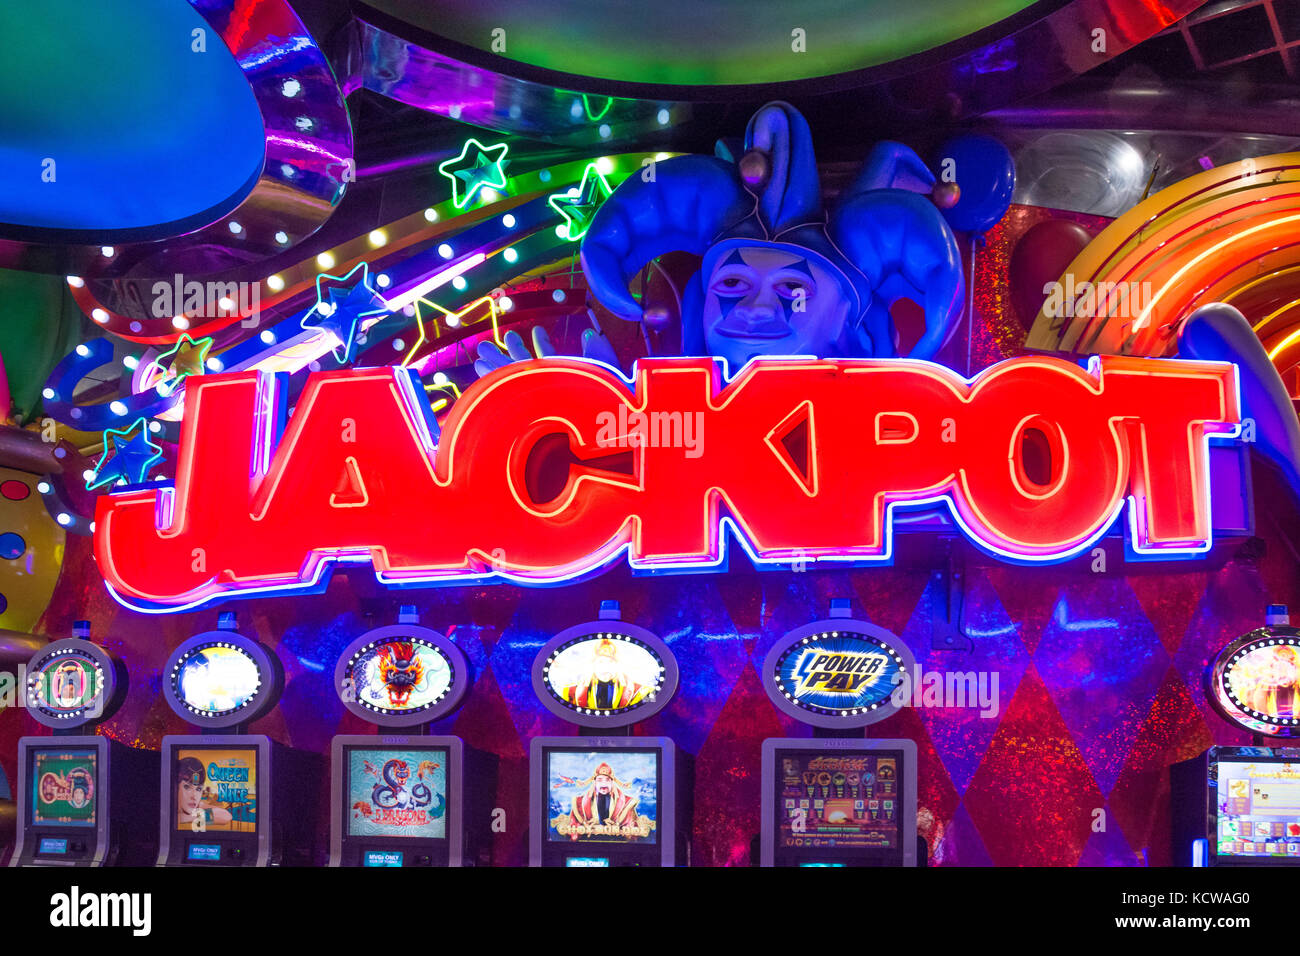 "Jackpot" signo en la Ciudad de Carnaval Casino & Entertainment World, Brakpan, East Rand, Mayor Johannesberg, provincia de Gauteng, República de Sudáfrica. Foto de stock